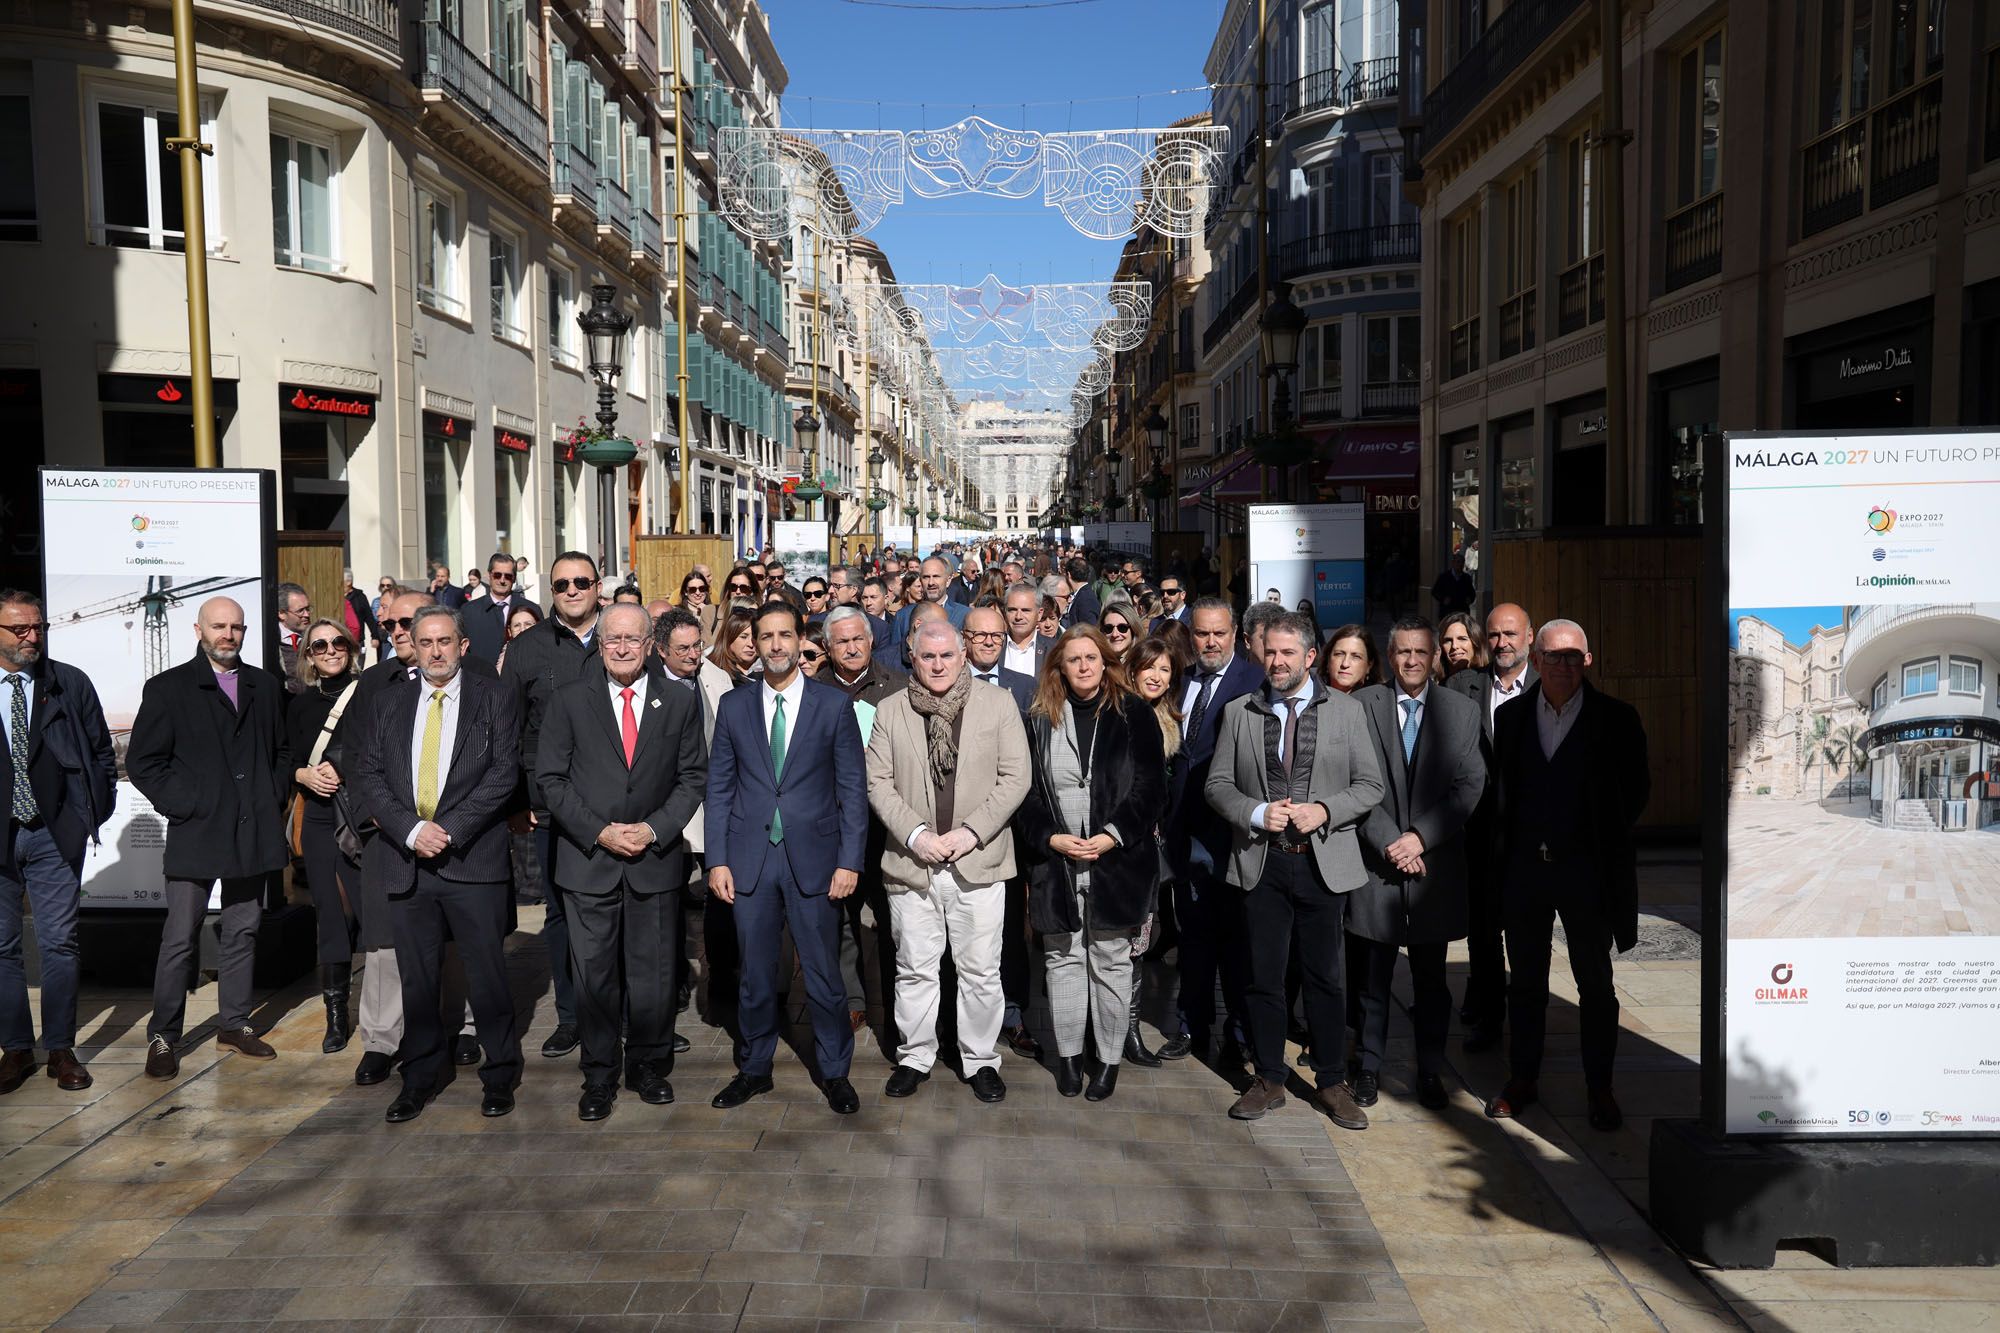 Inaugurada la Exposición ‘Málaga 2027. Un futuro presente’ de La Opinión de Málaga